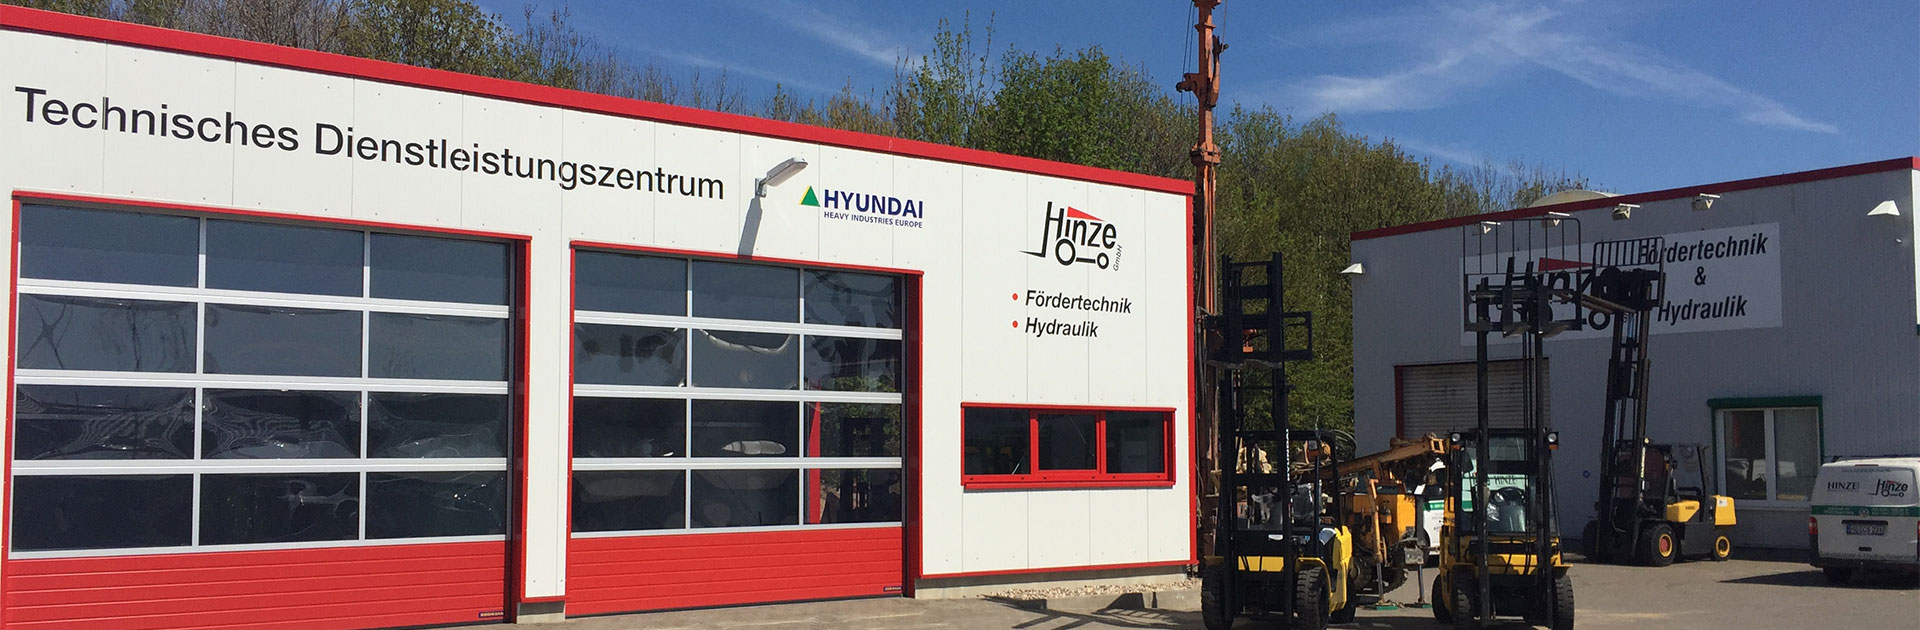 Betriebsgelände Hinze Hydraulik GmbH in Magdeburg